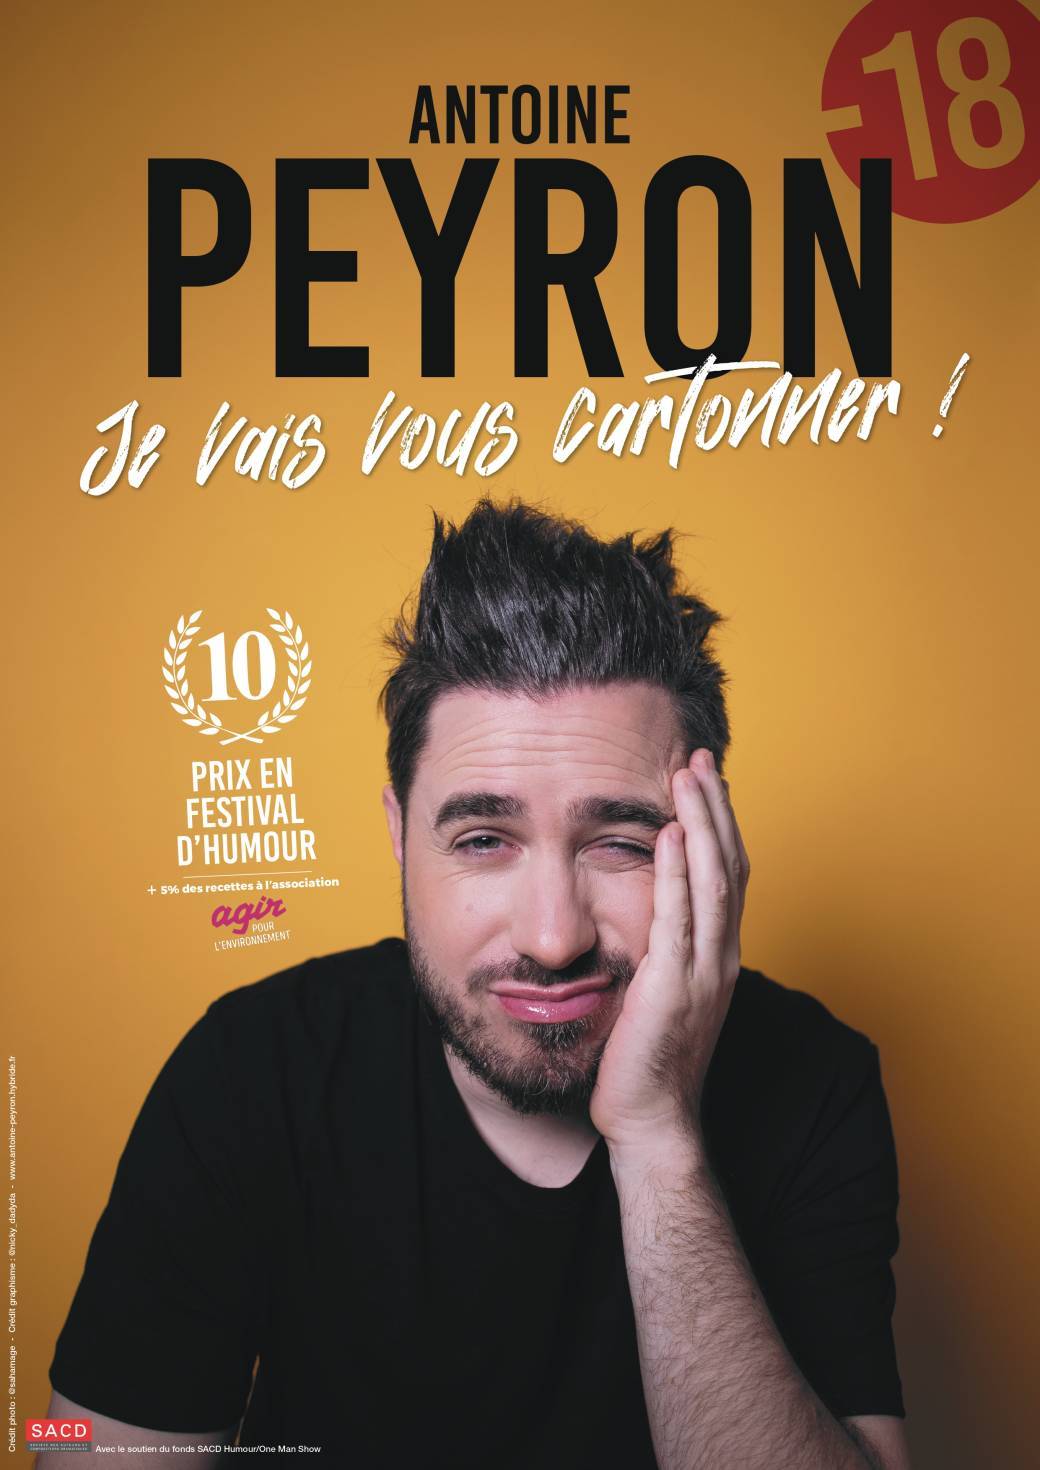 Antoine Peyron - Je vais vous cartonner !